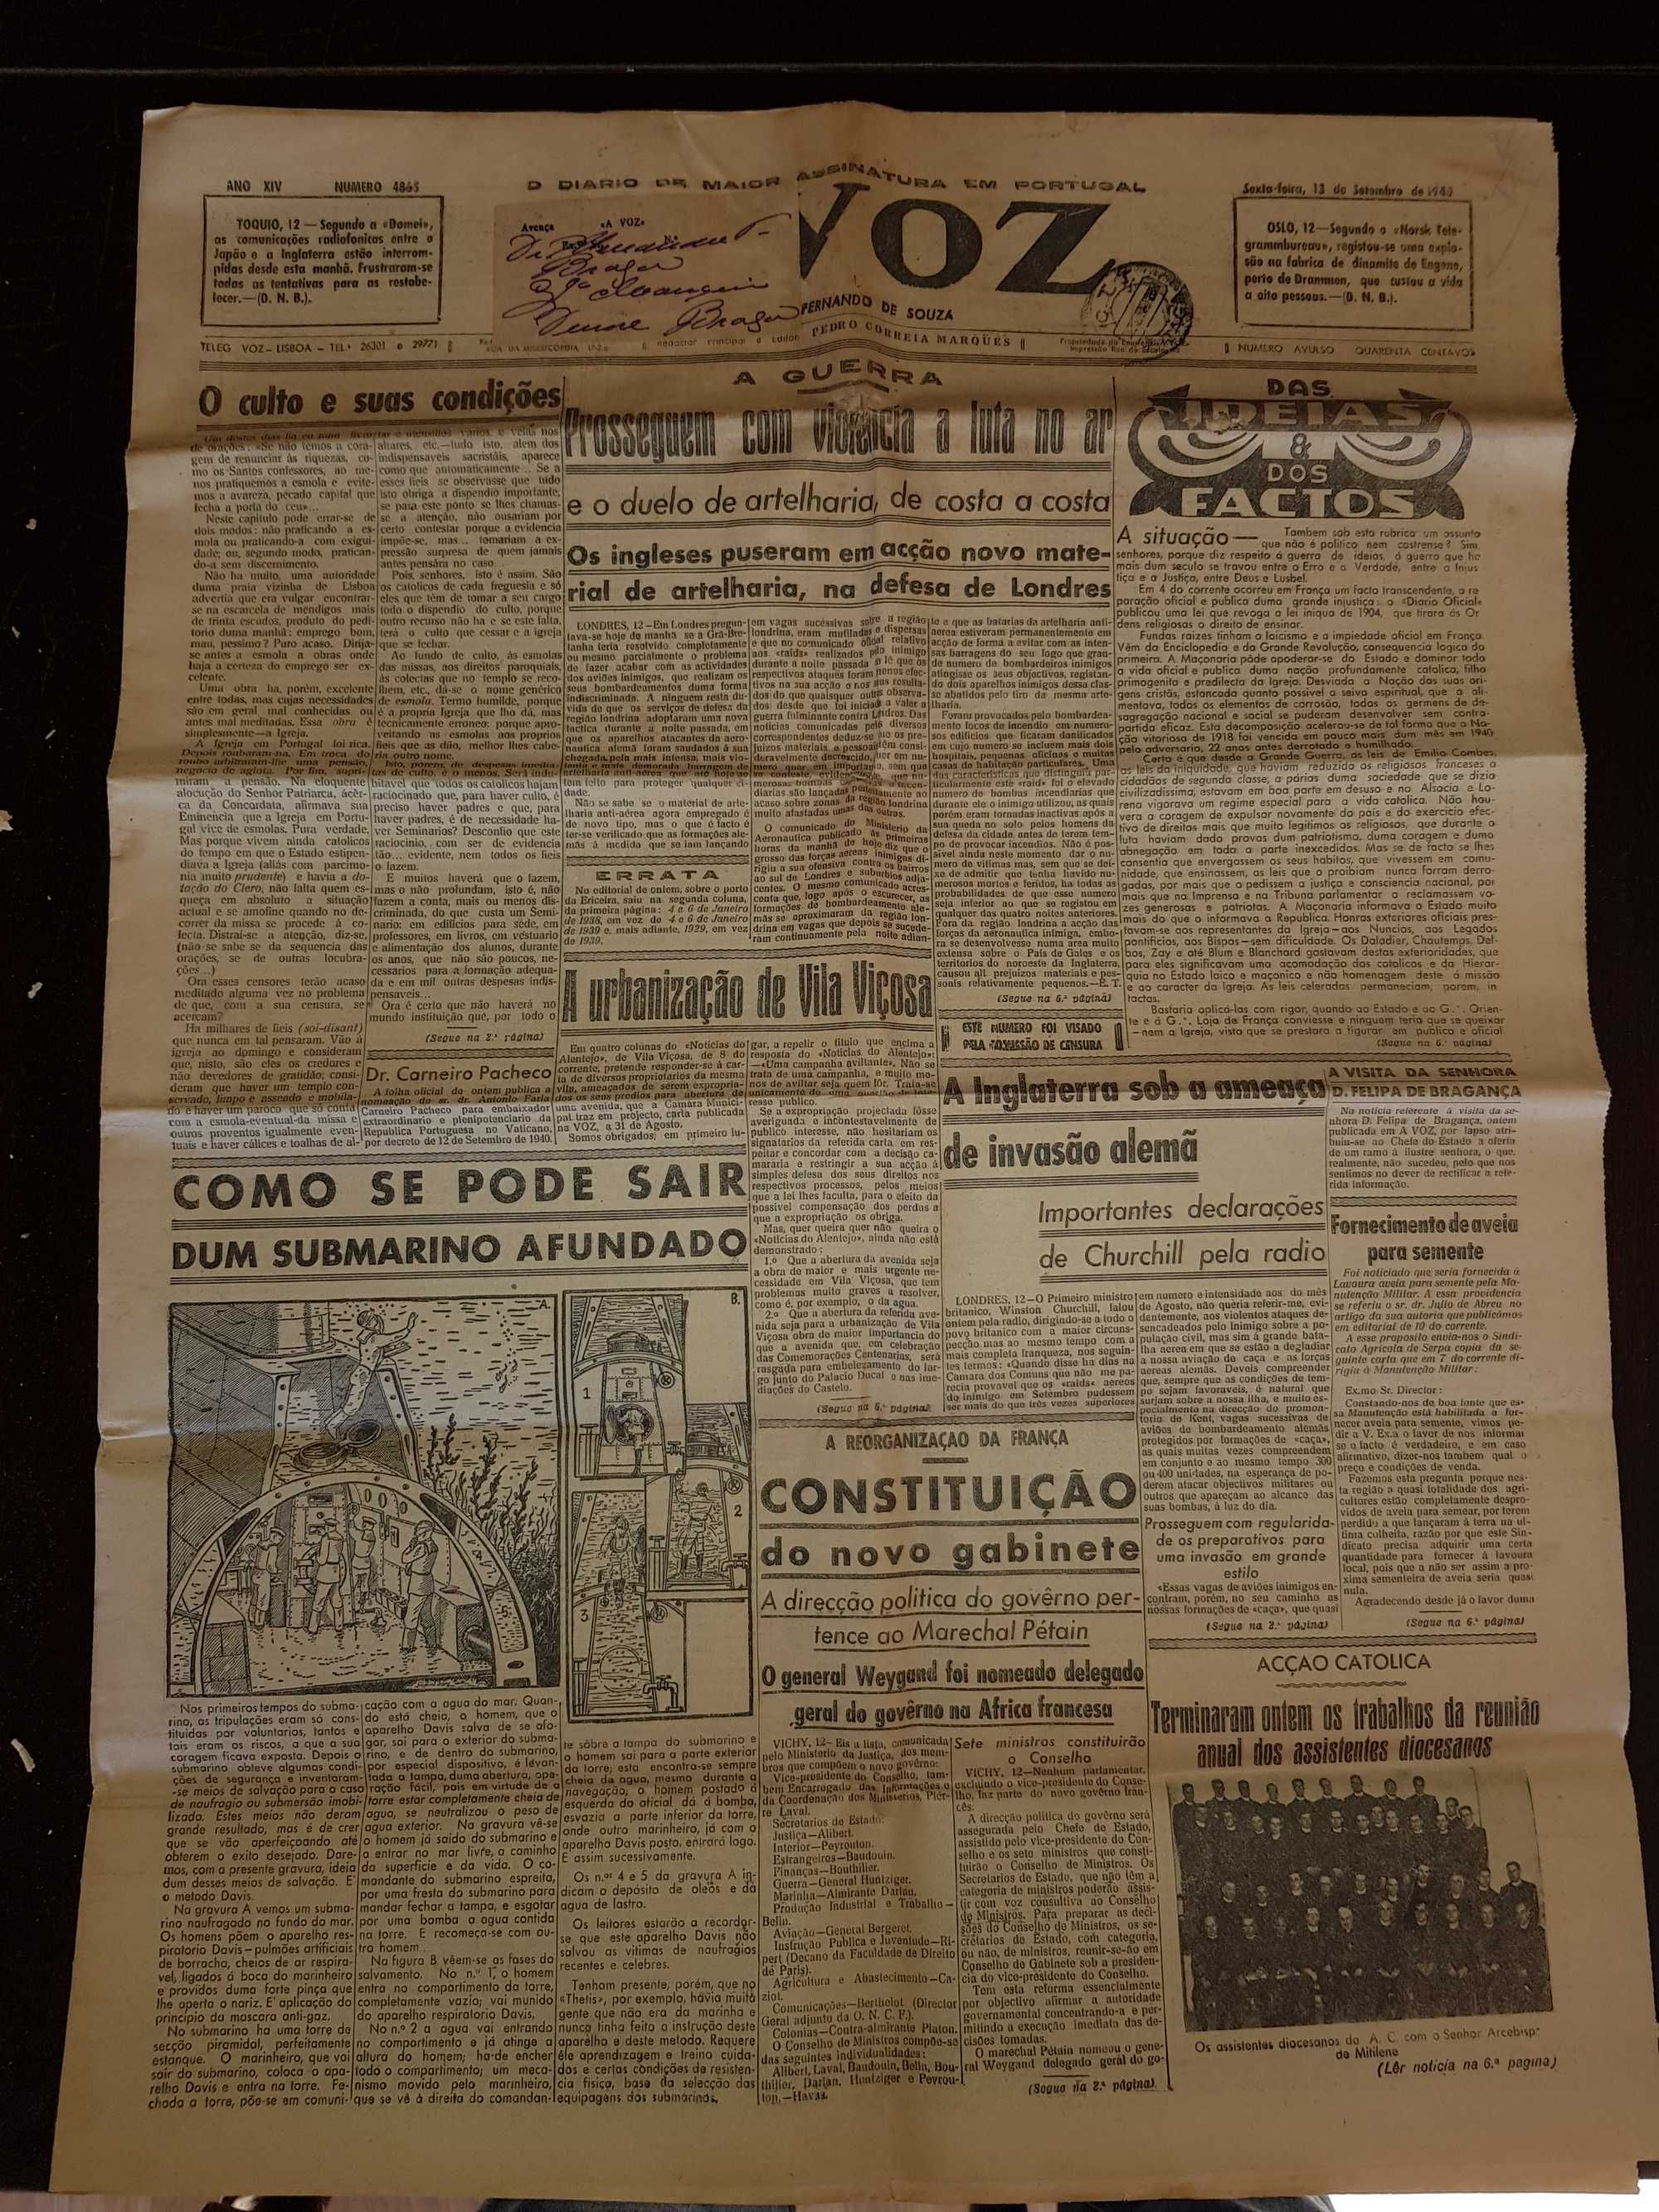 Jornais antigo 1940 a 1942